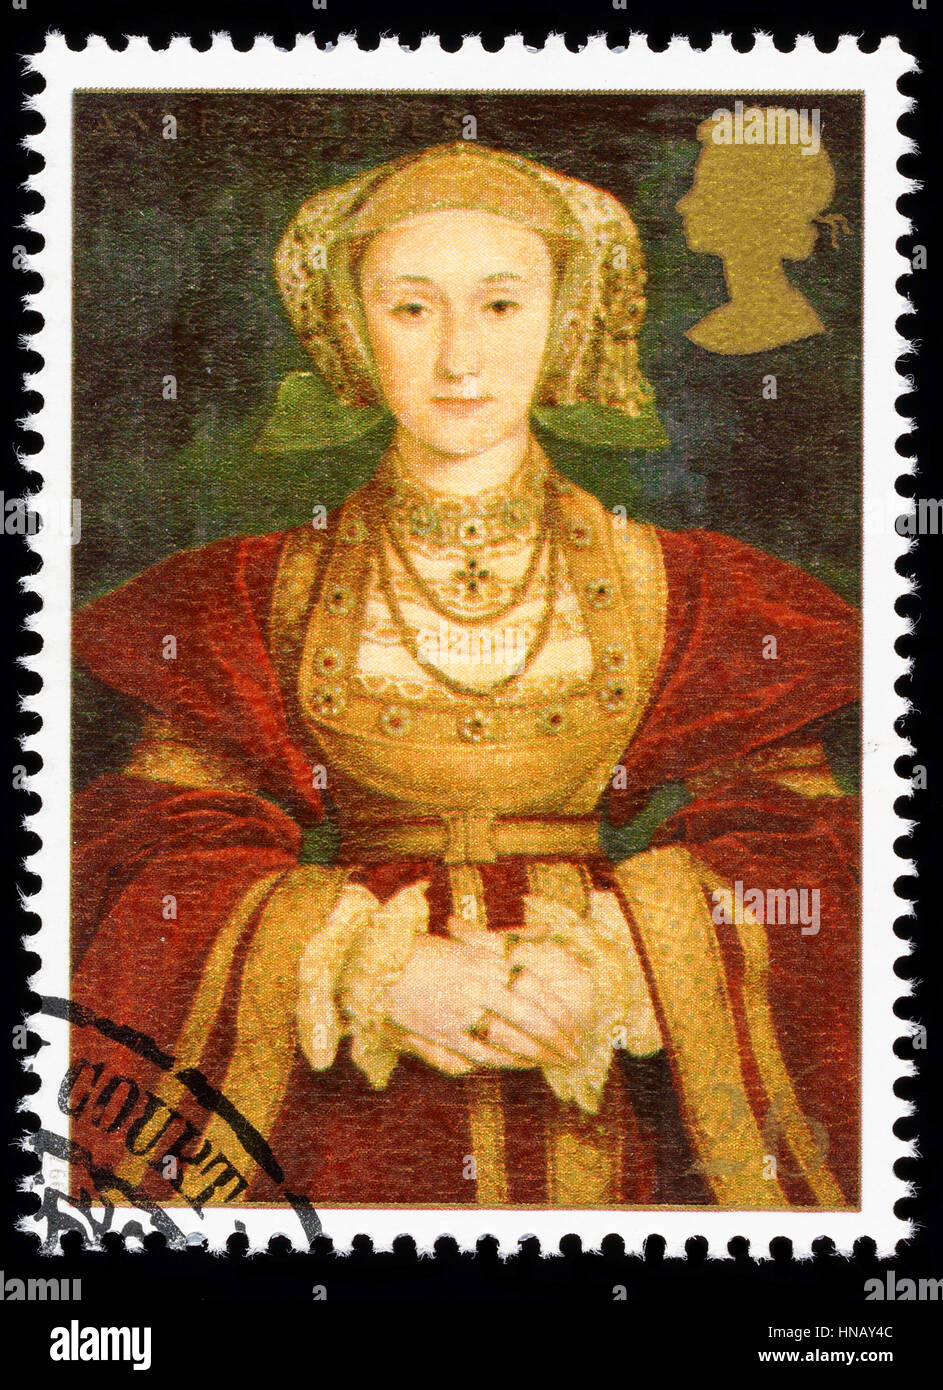 Royaume-uni - circa 1997 : timbre-poste imprimé en Grande-Bretagne commémorant le Roi Henry 8ème montrant Anne de Clèves l'une de ses nombreuses épouses Banque D'Images